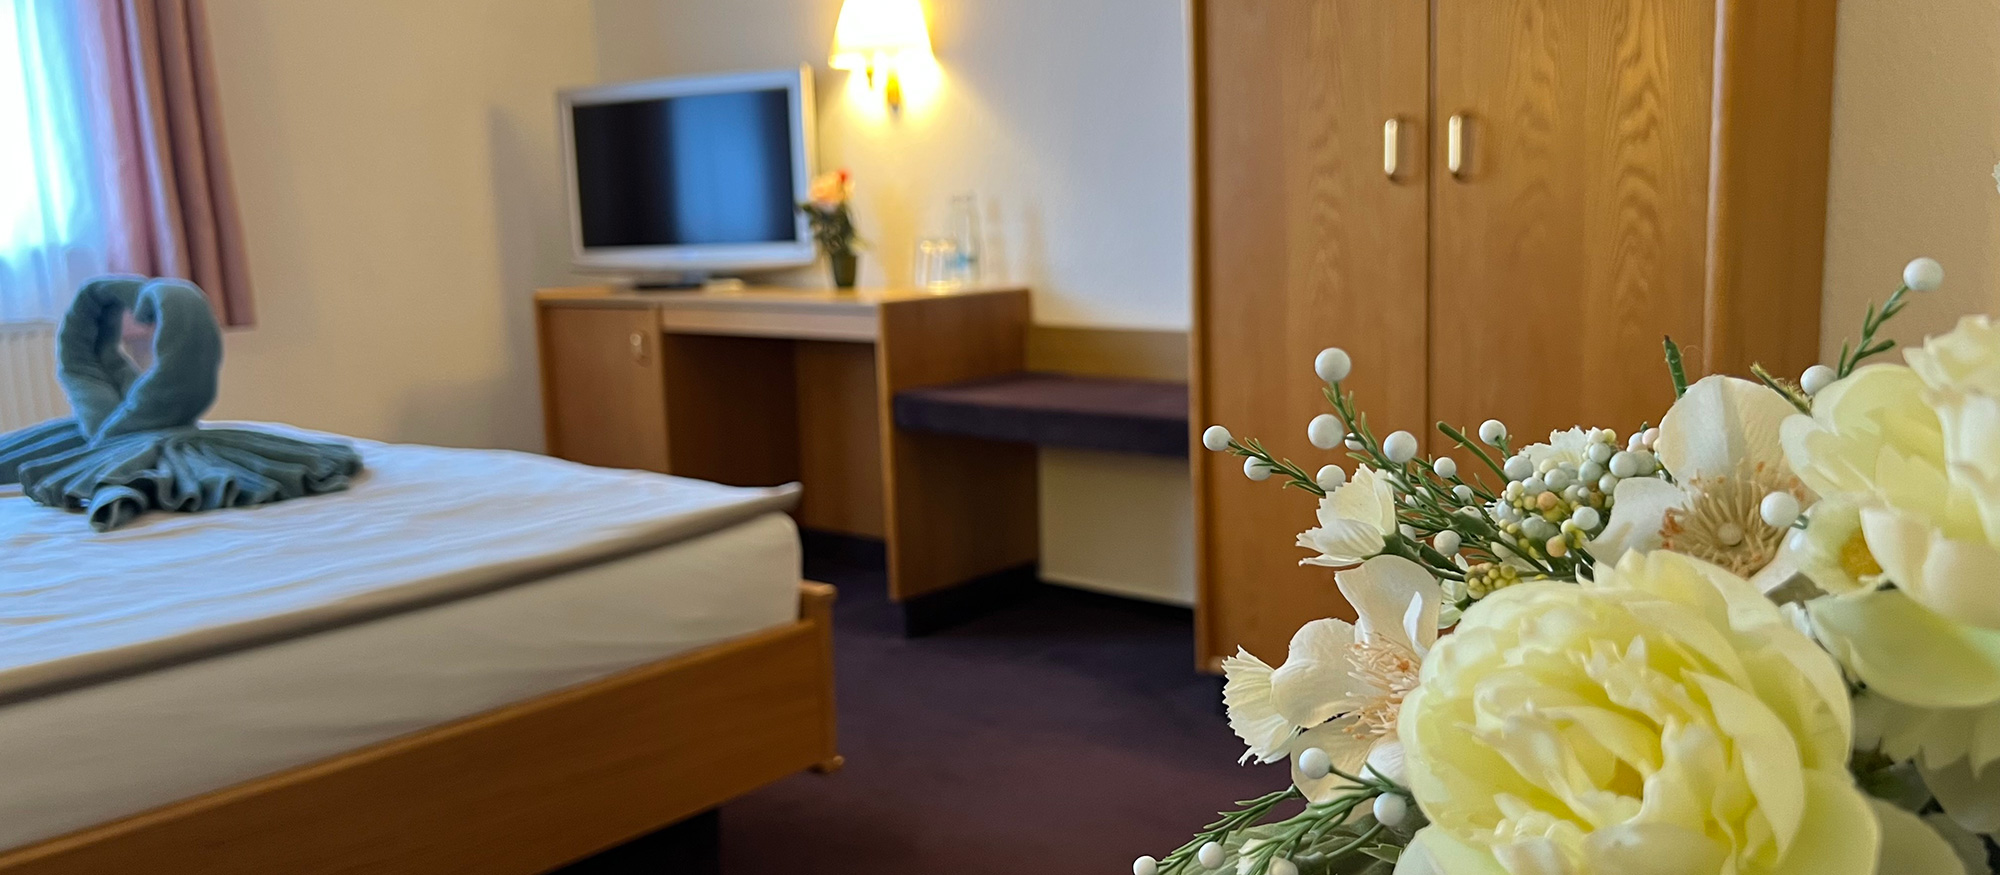 Hotelzimmer mit Bett, Schrank und Blumen